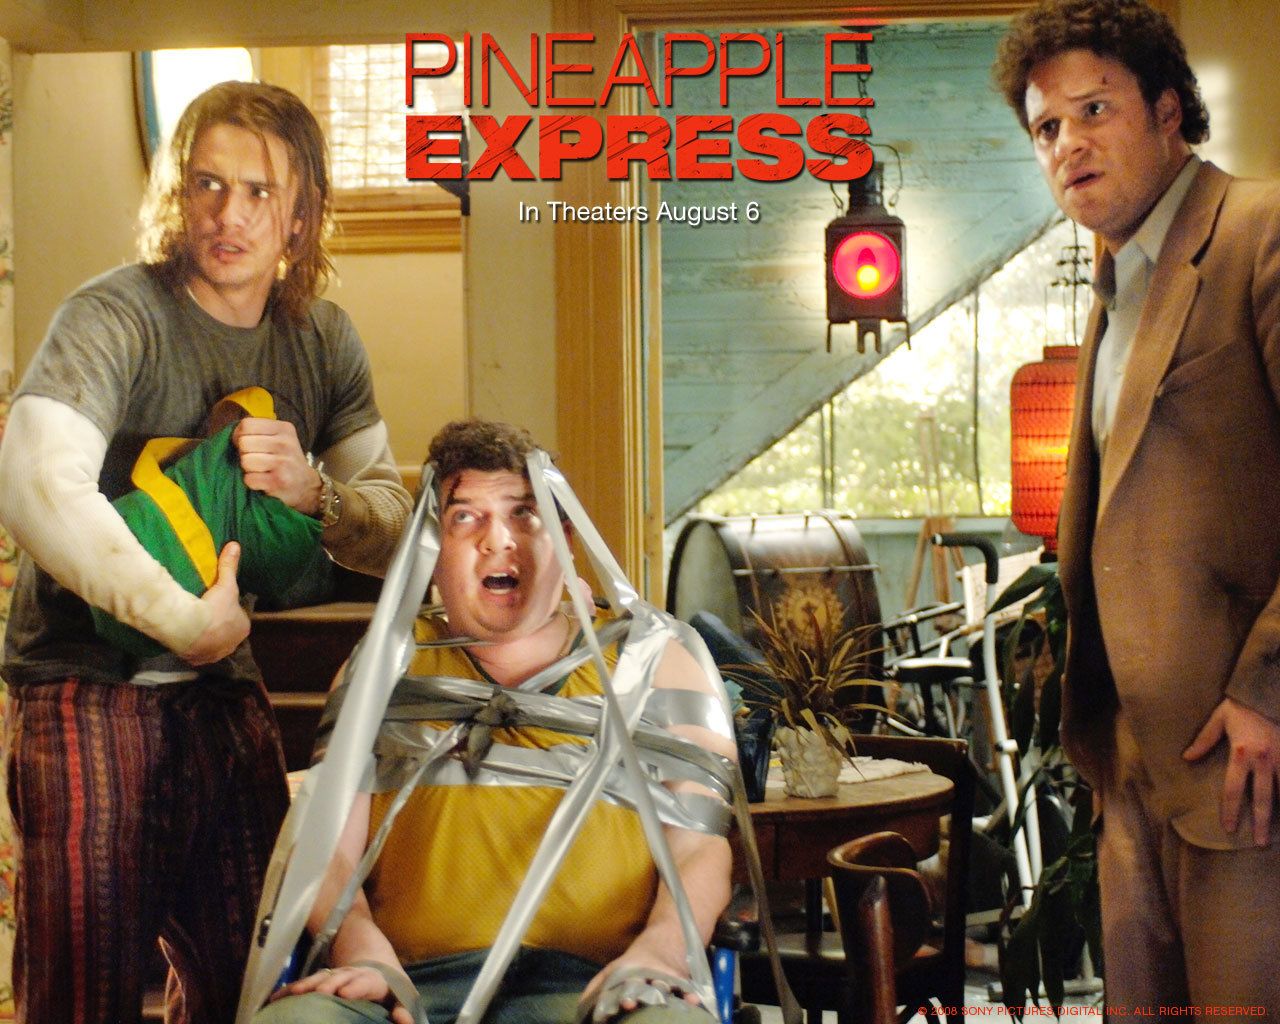 Pineapple Express Express Wallpaper